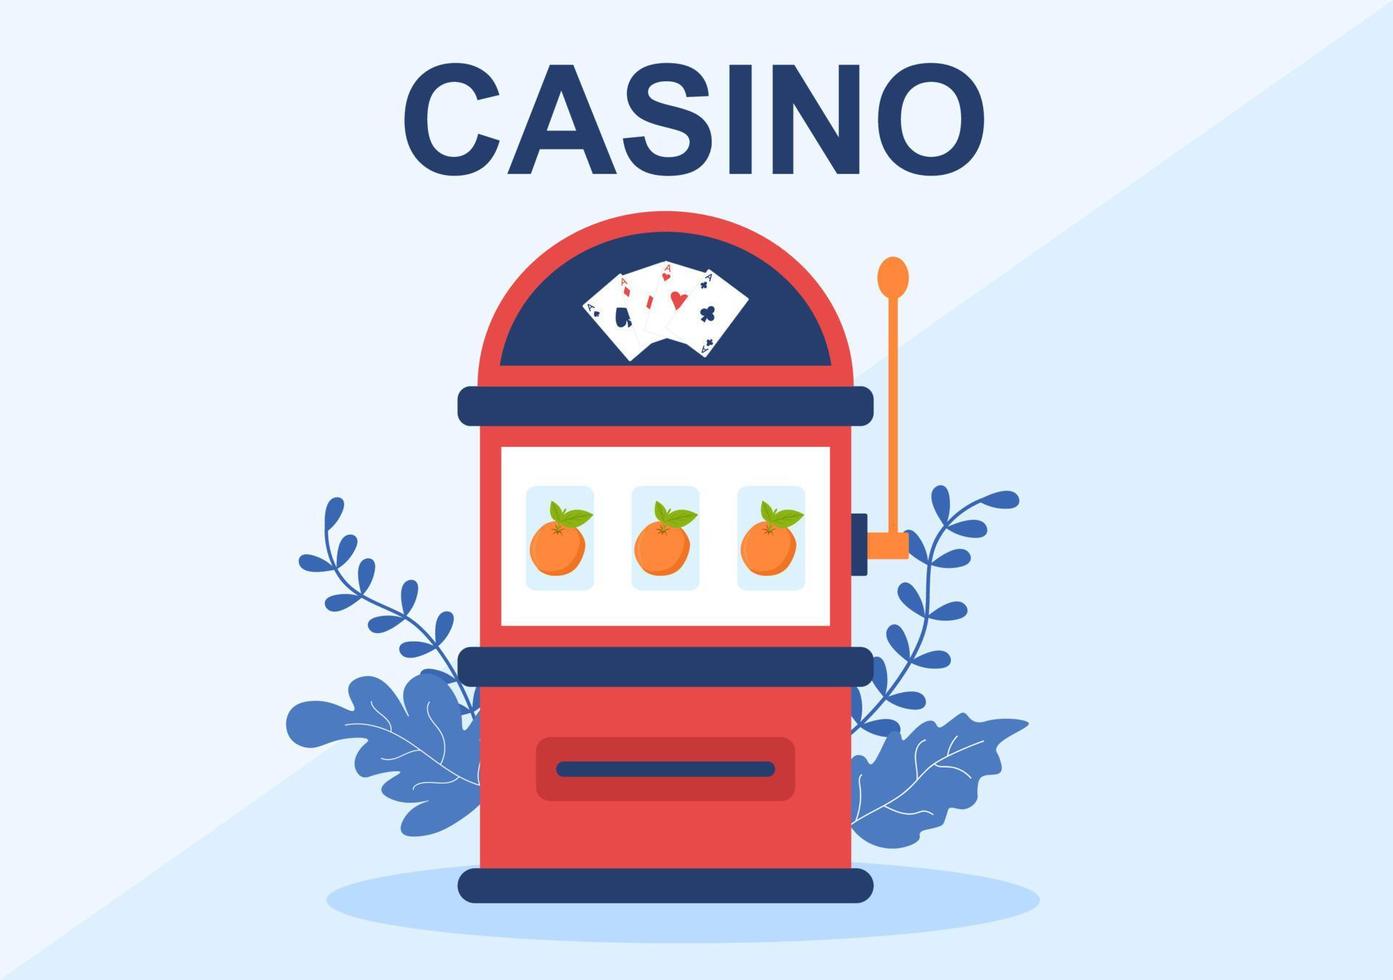 kasino tecknad illustration med knappar, spelautomat, roulette, pokermarker och spelkort för design av spelstil vektor